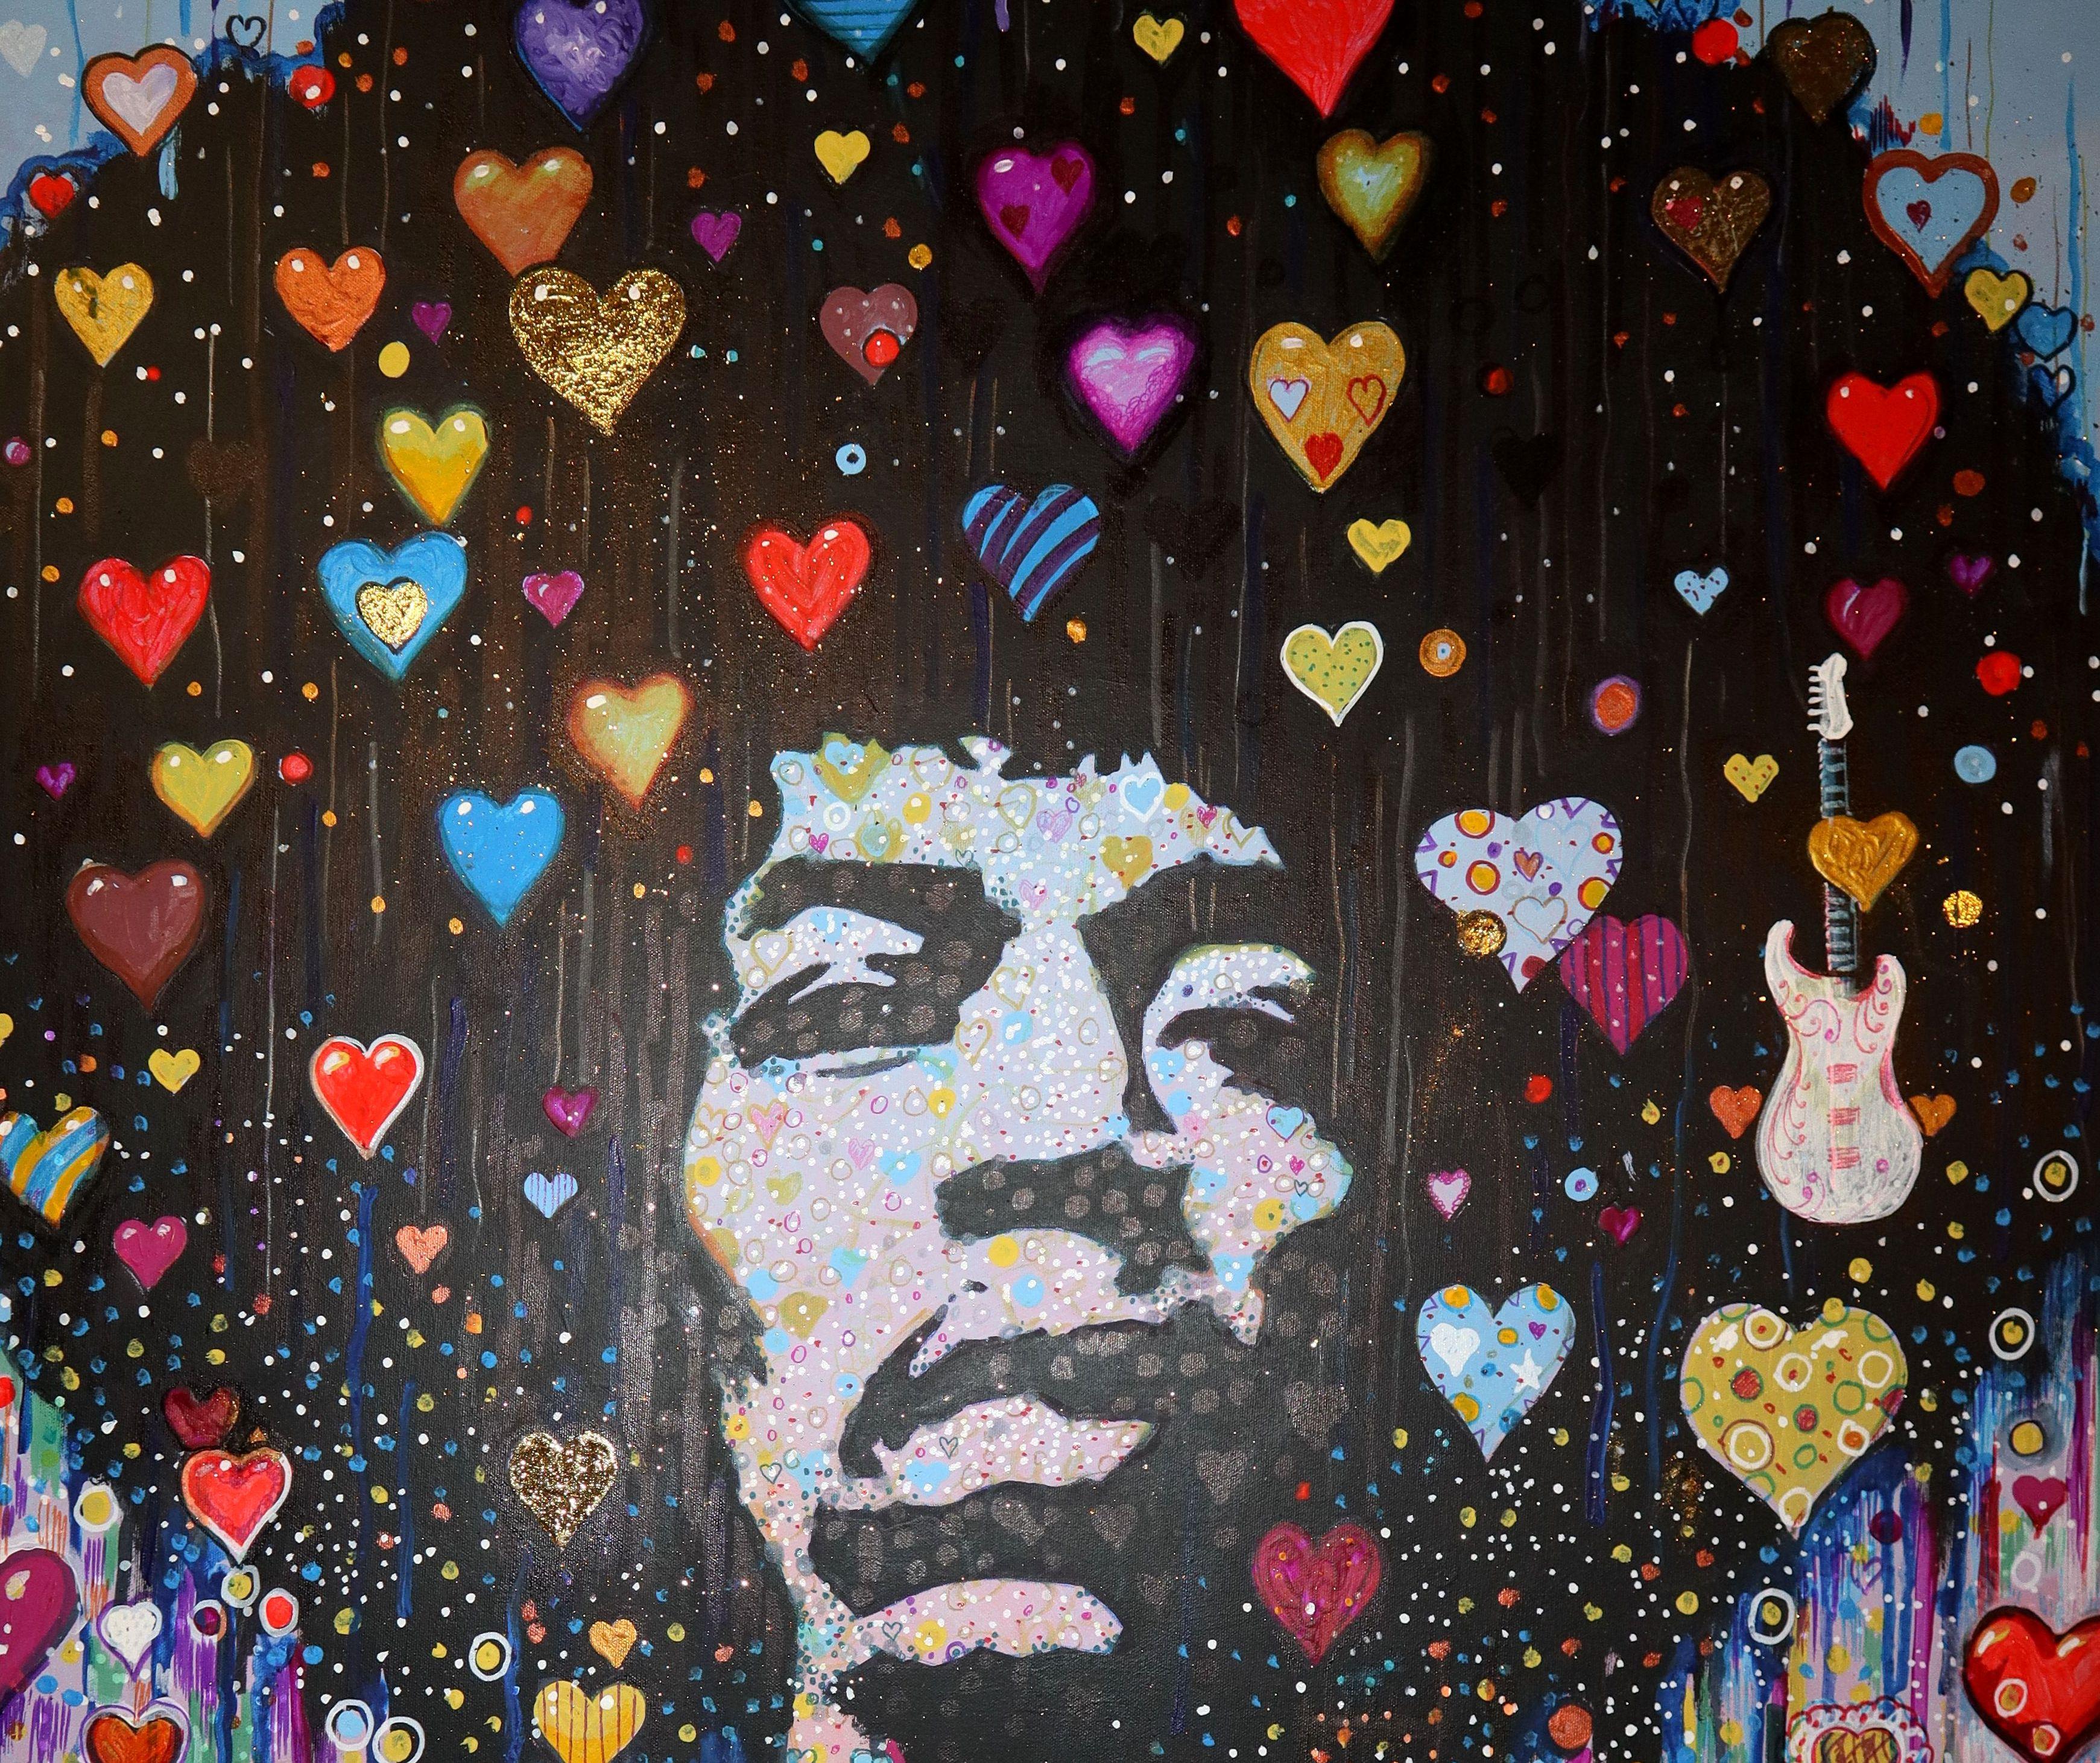 Jimi Hendrix - Painting by RAKHMET REDZHEPOV (RAMZI)